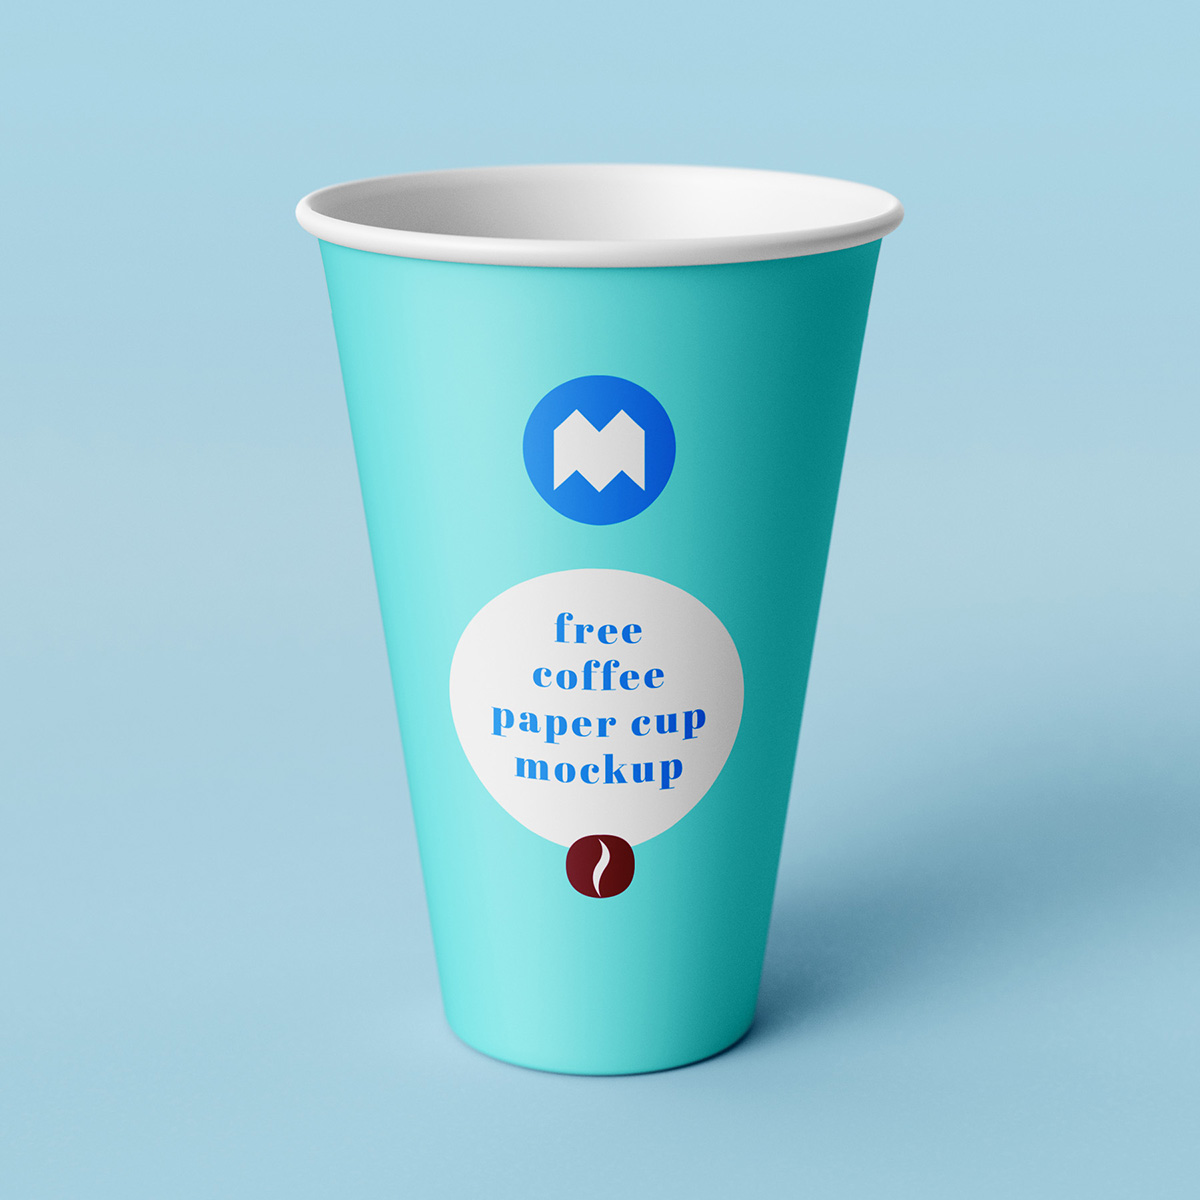 06 2款可商用咖啡纸杯包装设计样机 Coffee Paper Cup Mockup